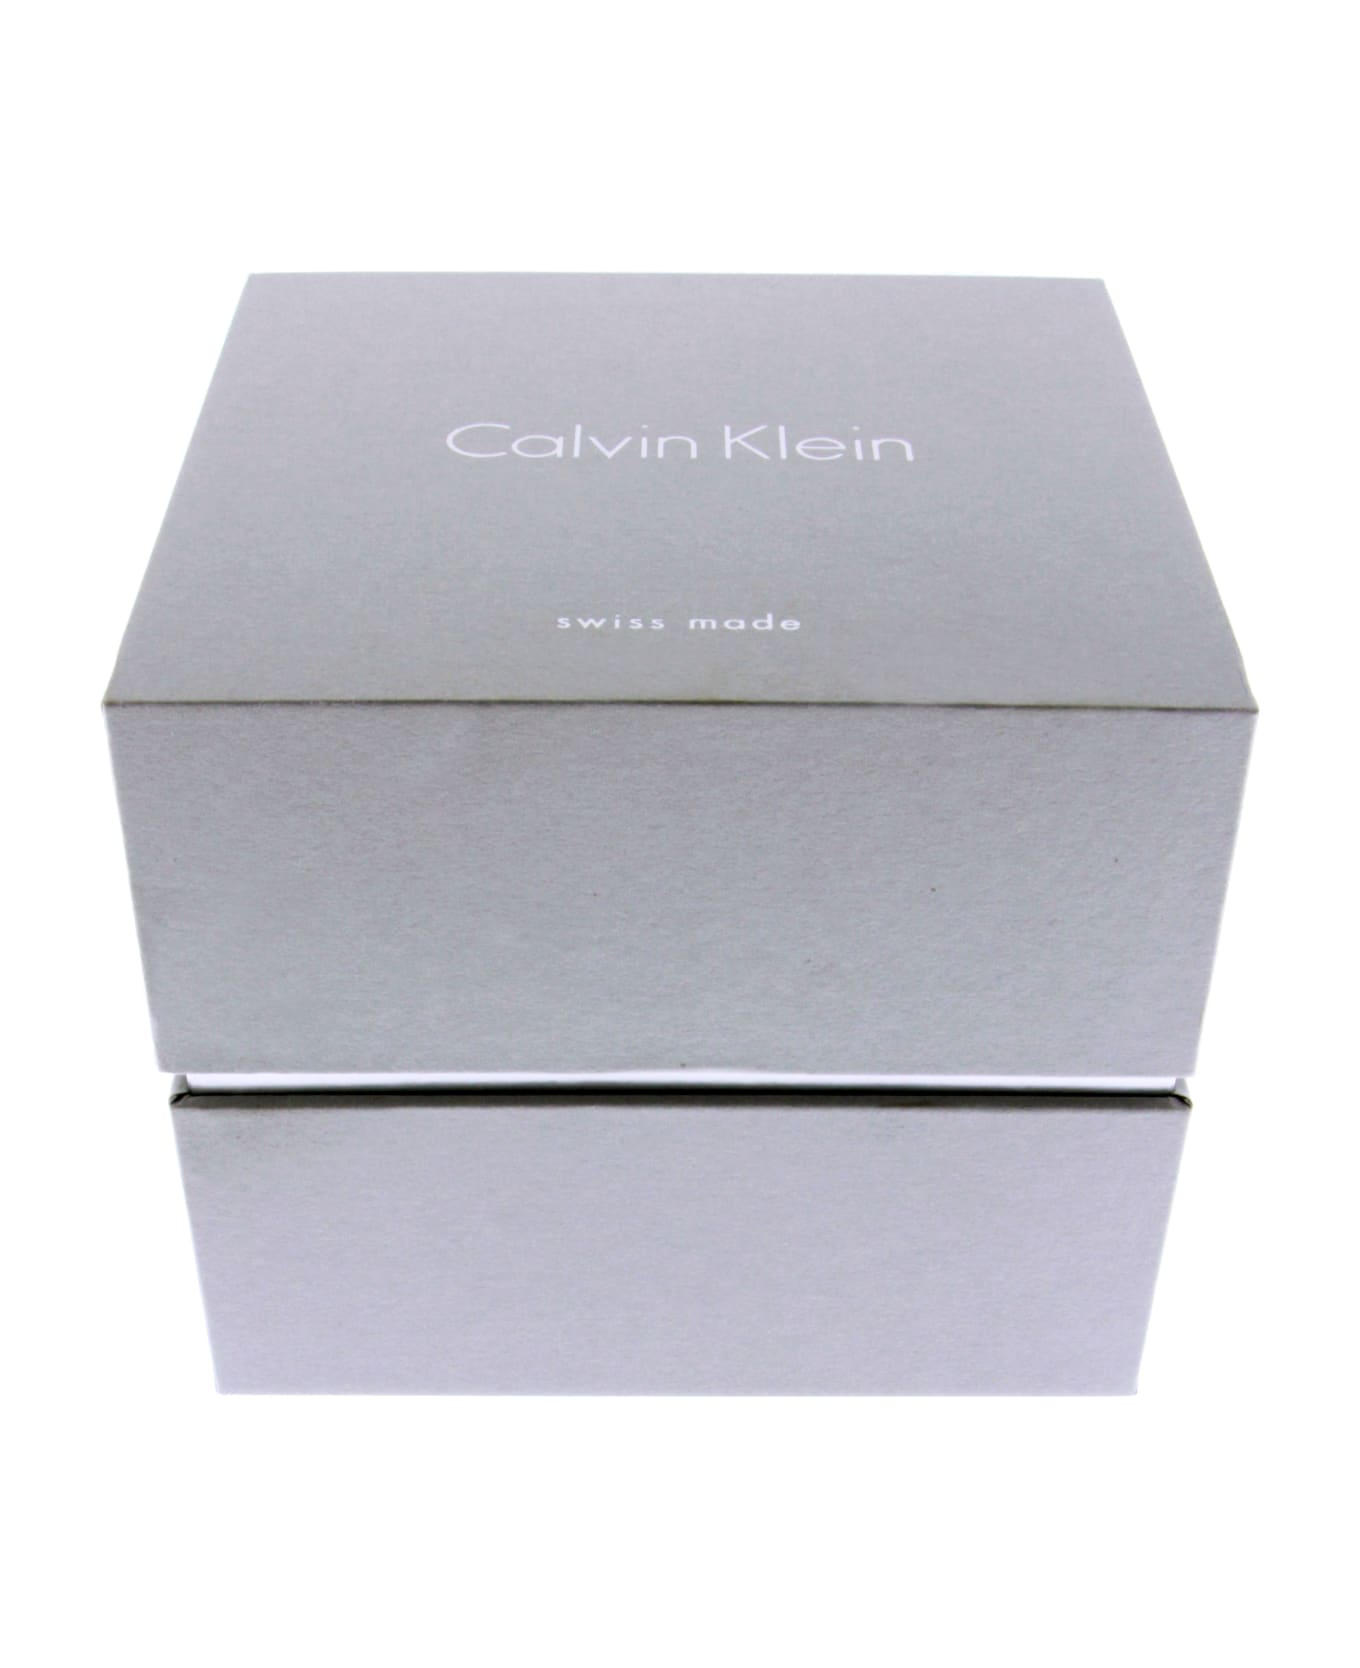 Calvin Klein K2g27146 City Watches